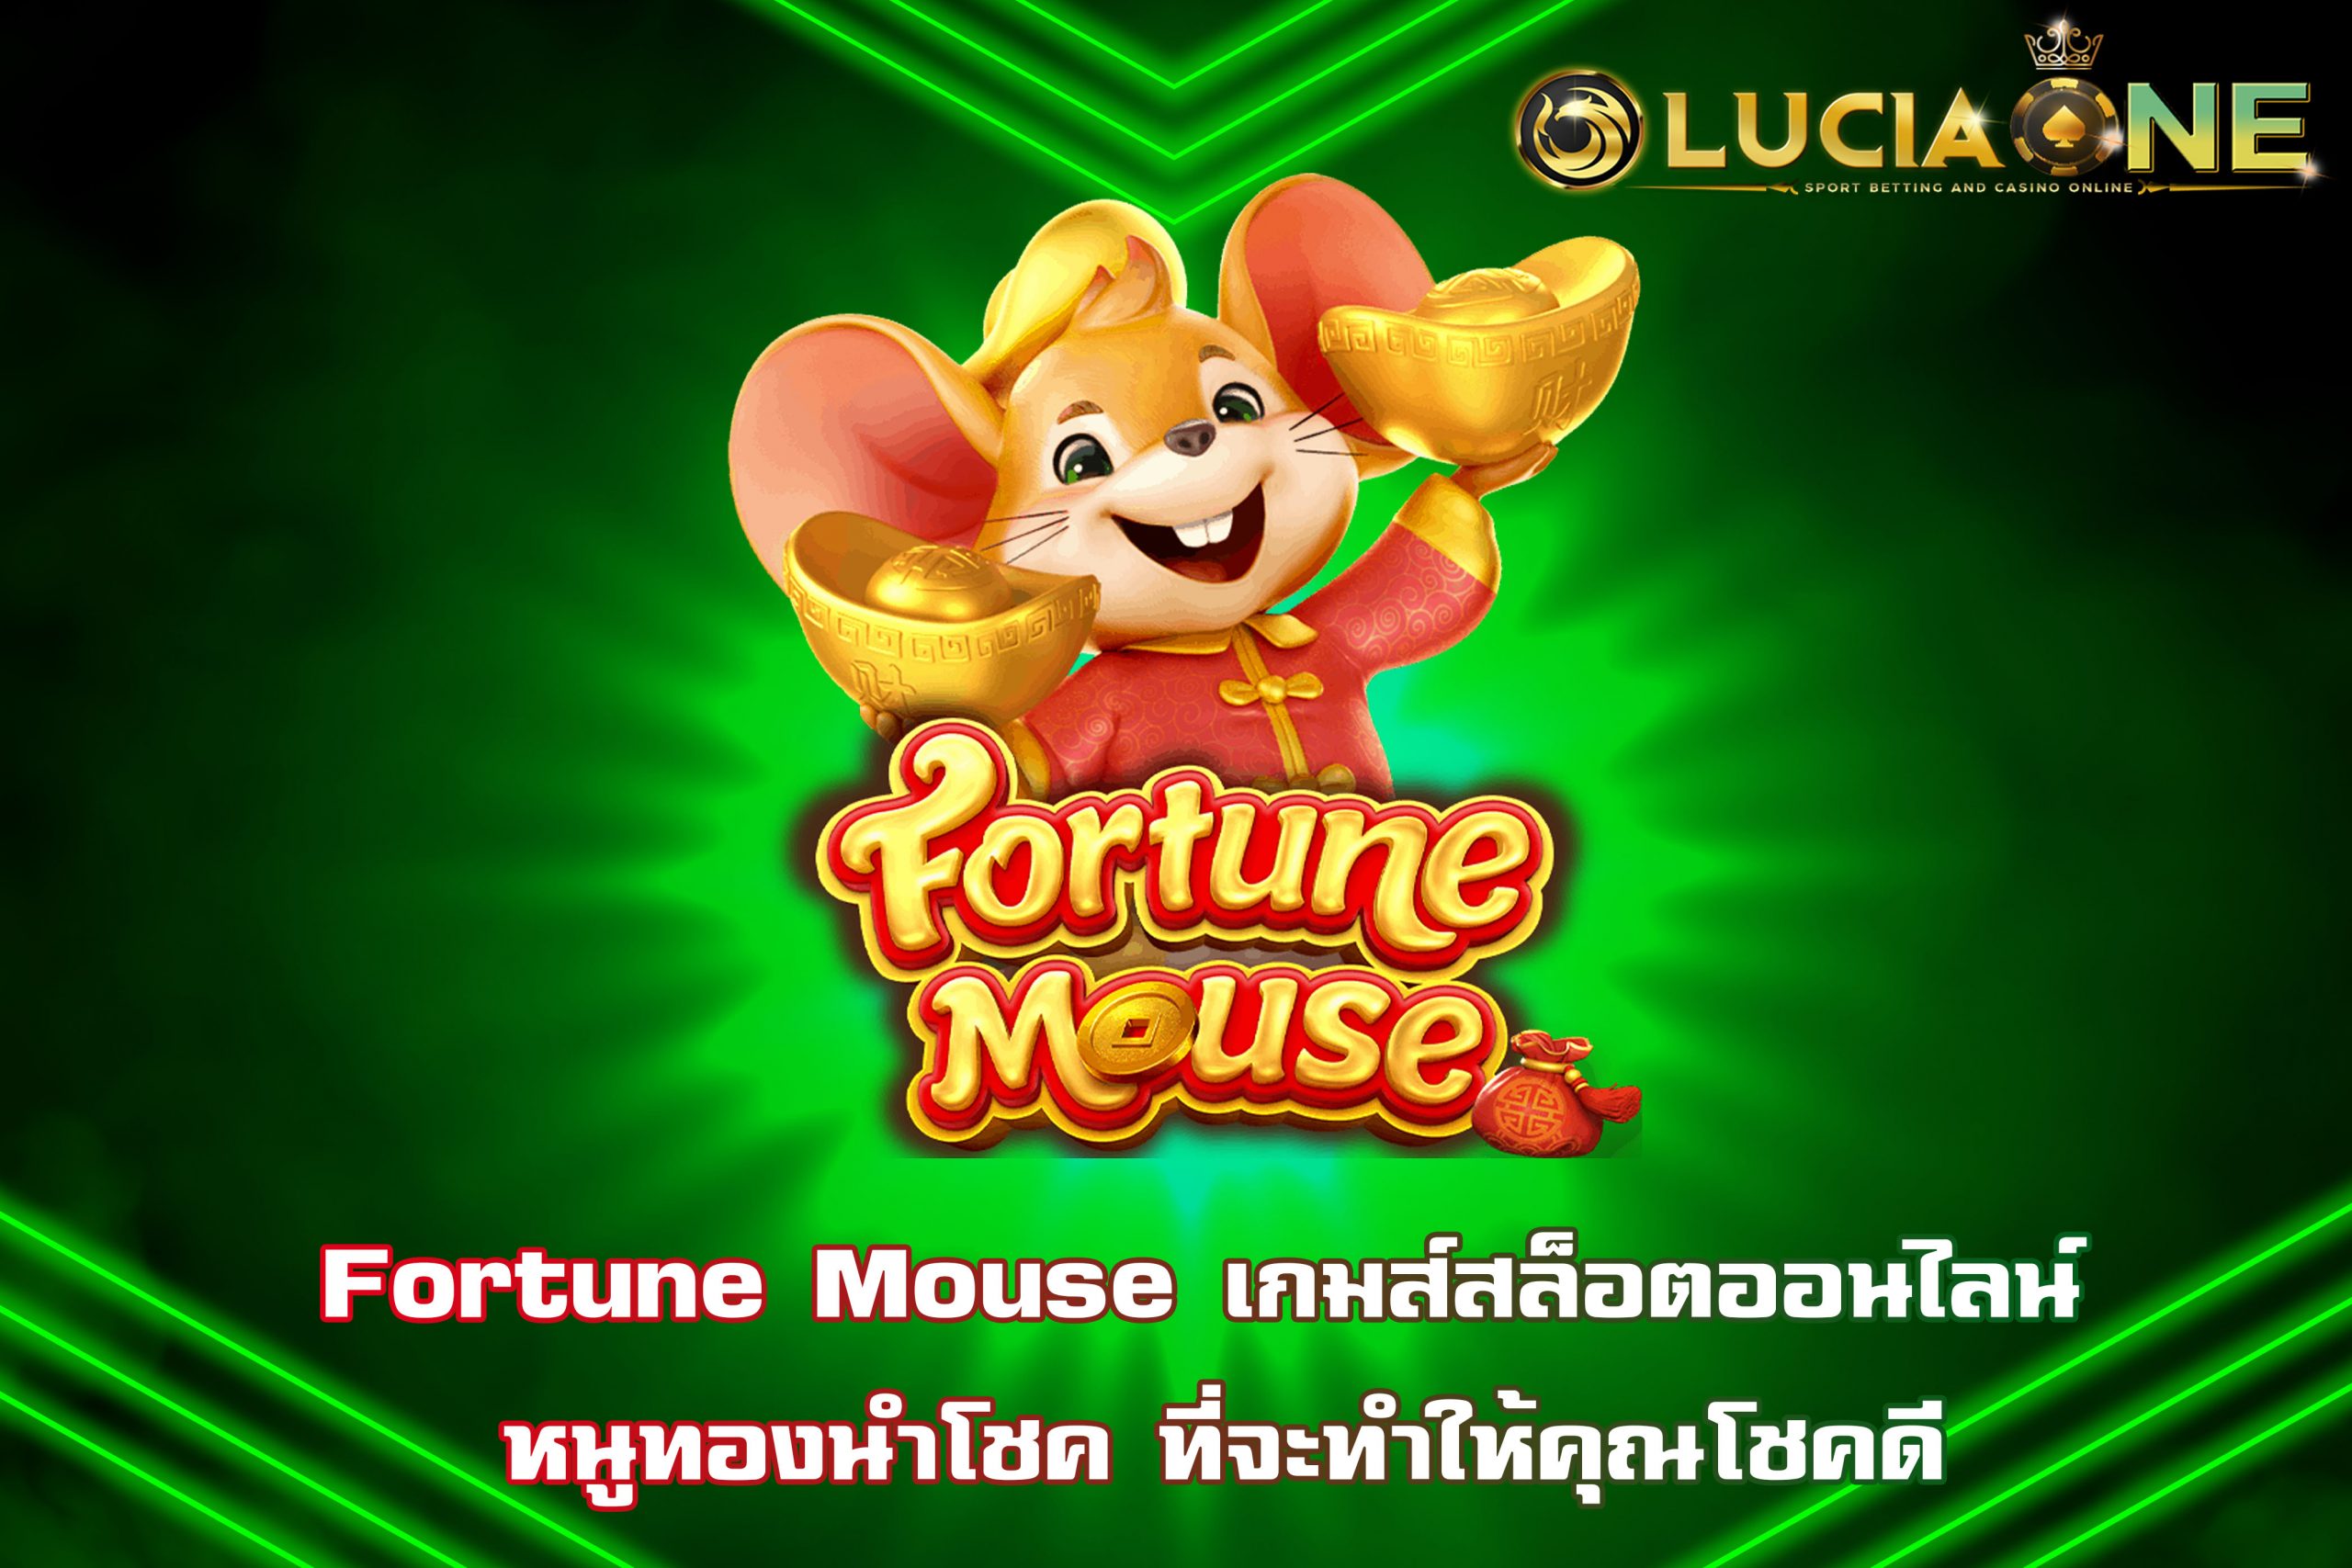 Fortune Mouse เกมส์สล็อตออนไลน์ หนูทองนำโชค ที่จะทำให้คุณโชคดี